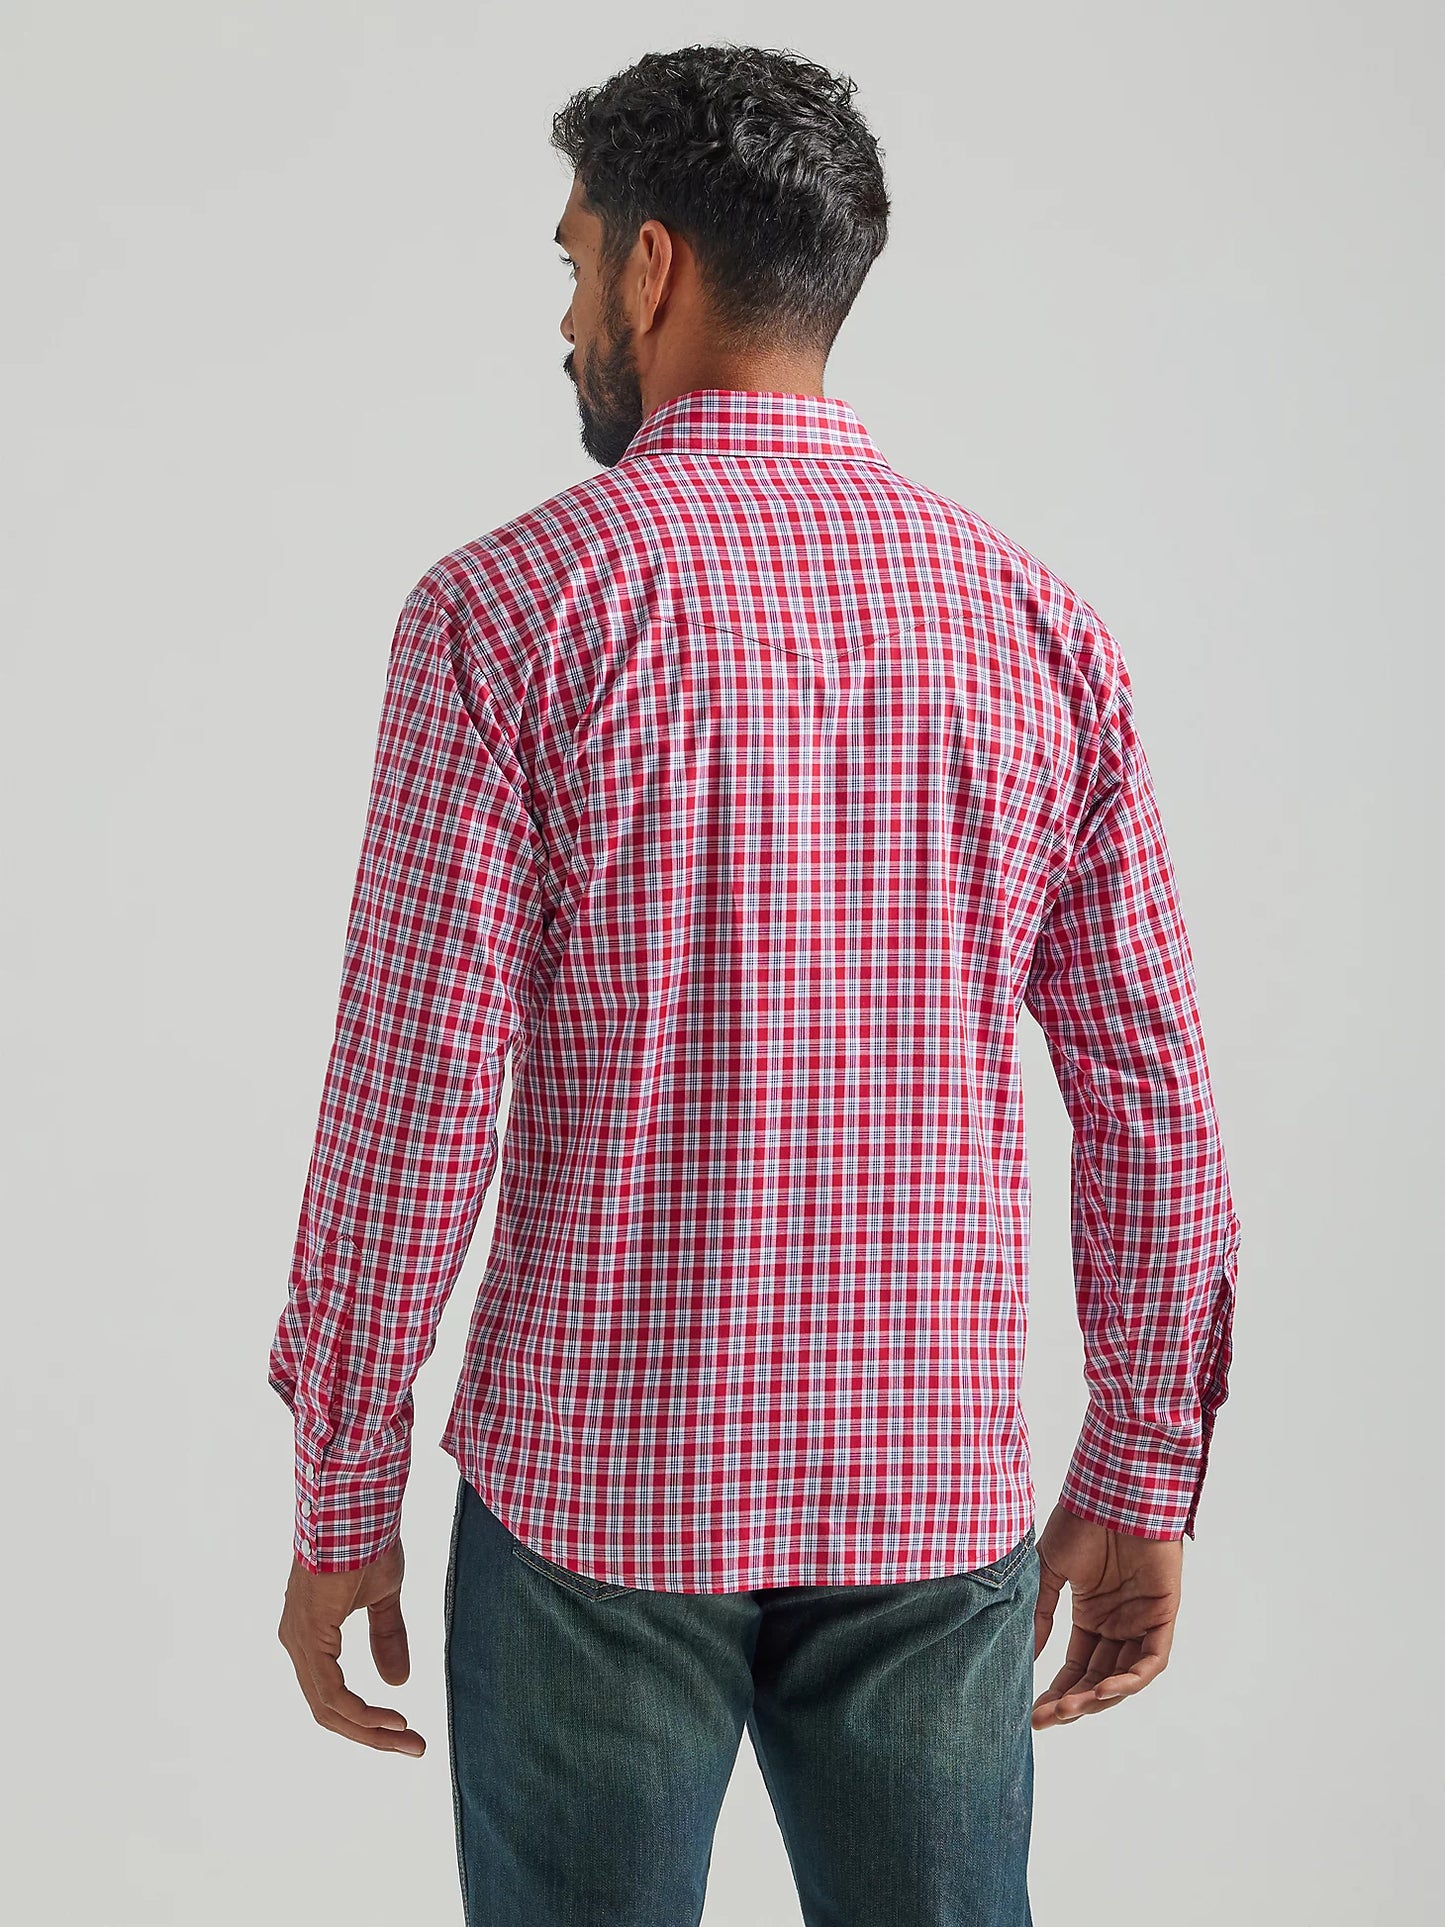 Men's Wrangler® Wrinkle Resist Long Sleeve Shirt in Red